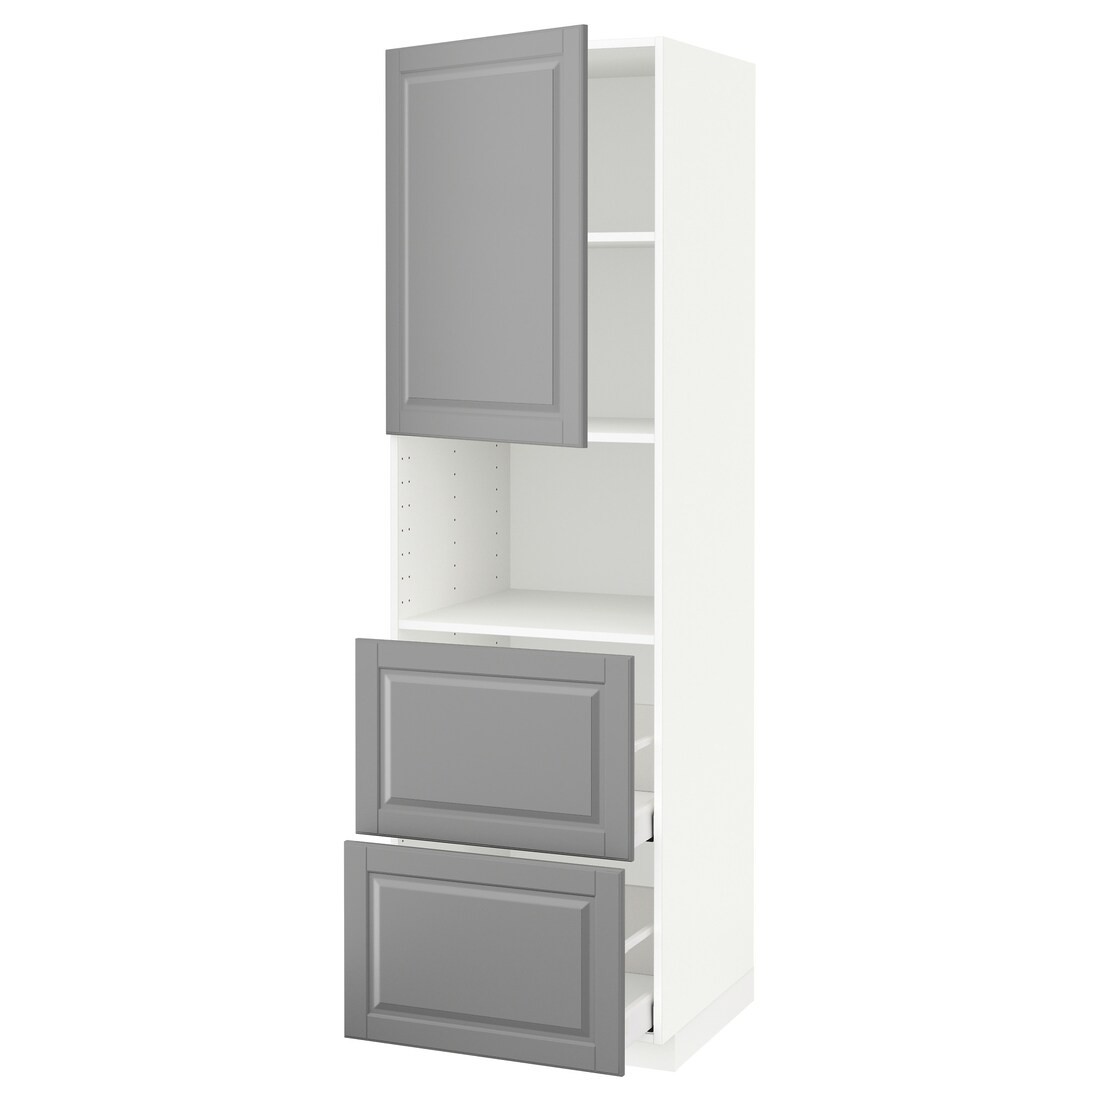 METOD МЕТОД / MAXIMERA МАКСИМЕРА Высокий шкаф для микроволновки с дверями / 2 ящика, белый / Bodbyn серый, 60x60x200 см